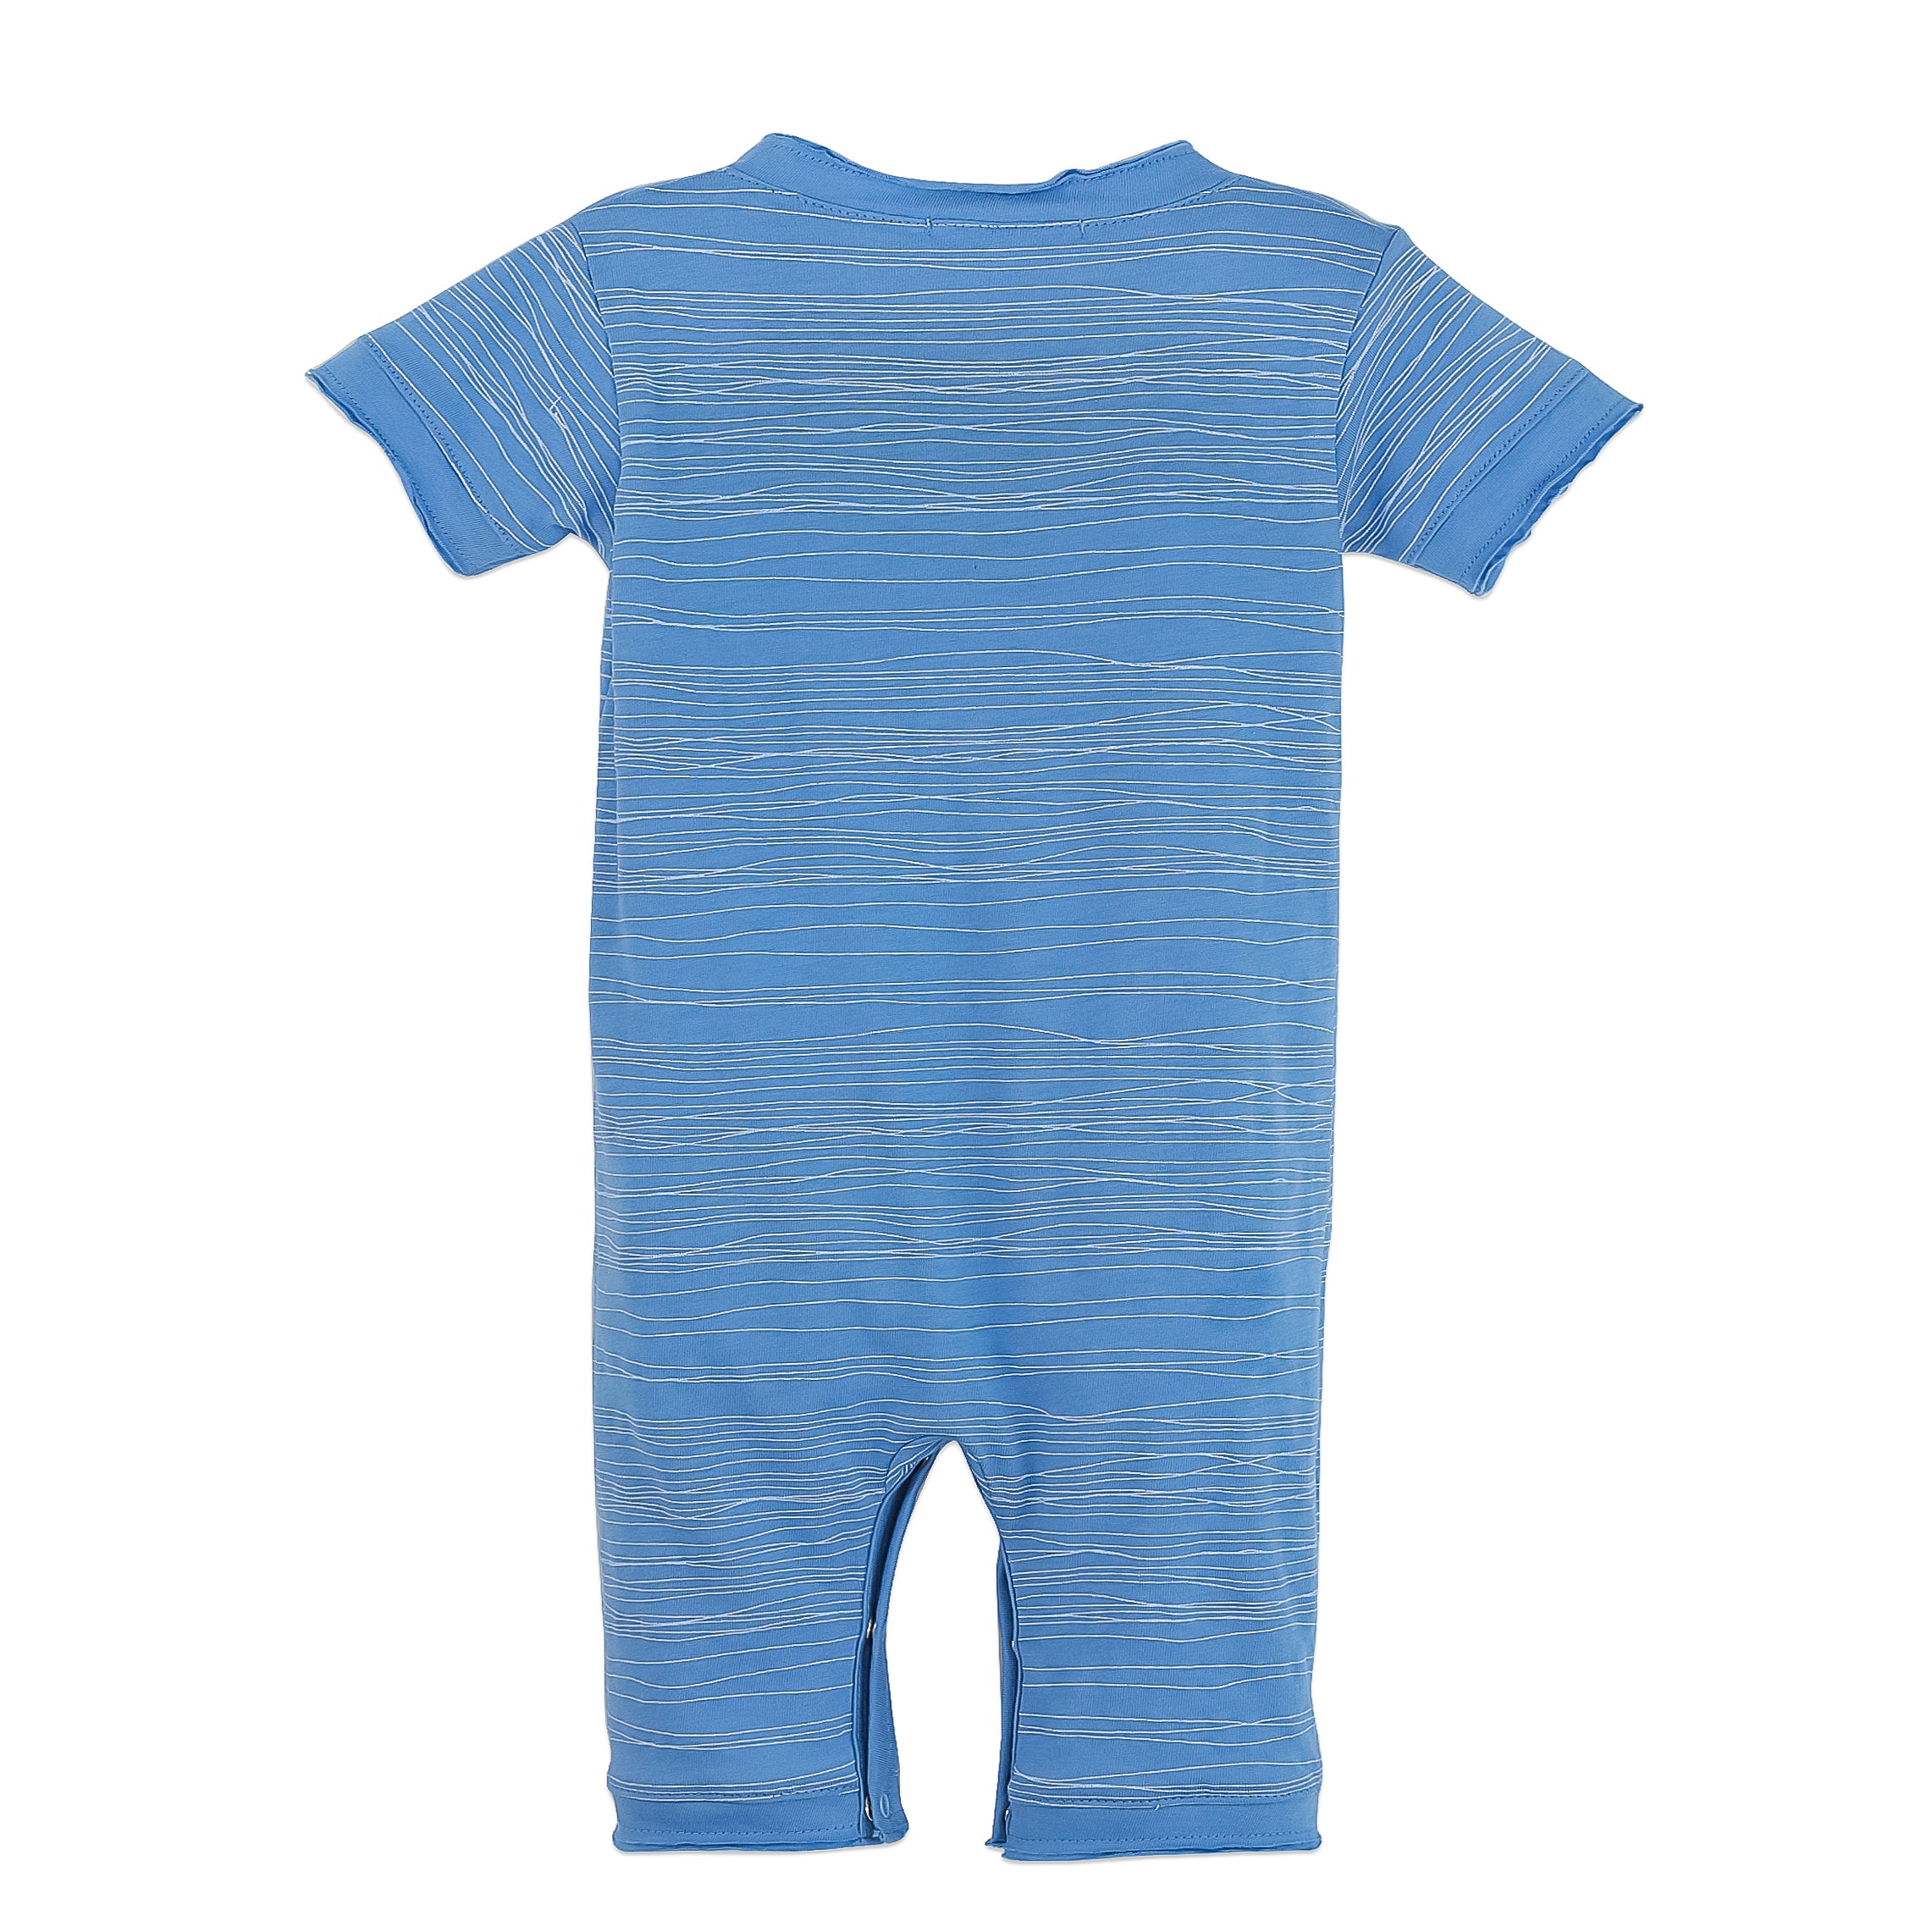 Henley Romper - Stripe on Cornflower Blue 100% Pima Cotton